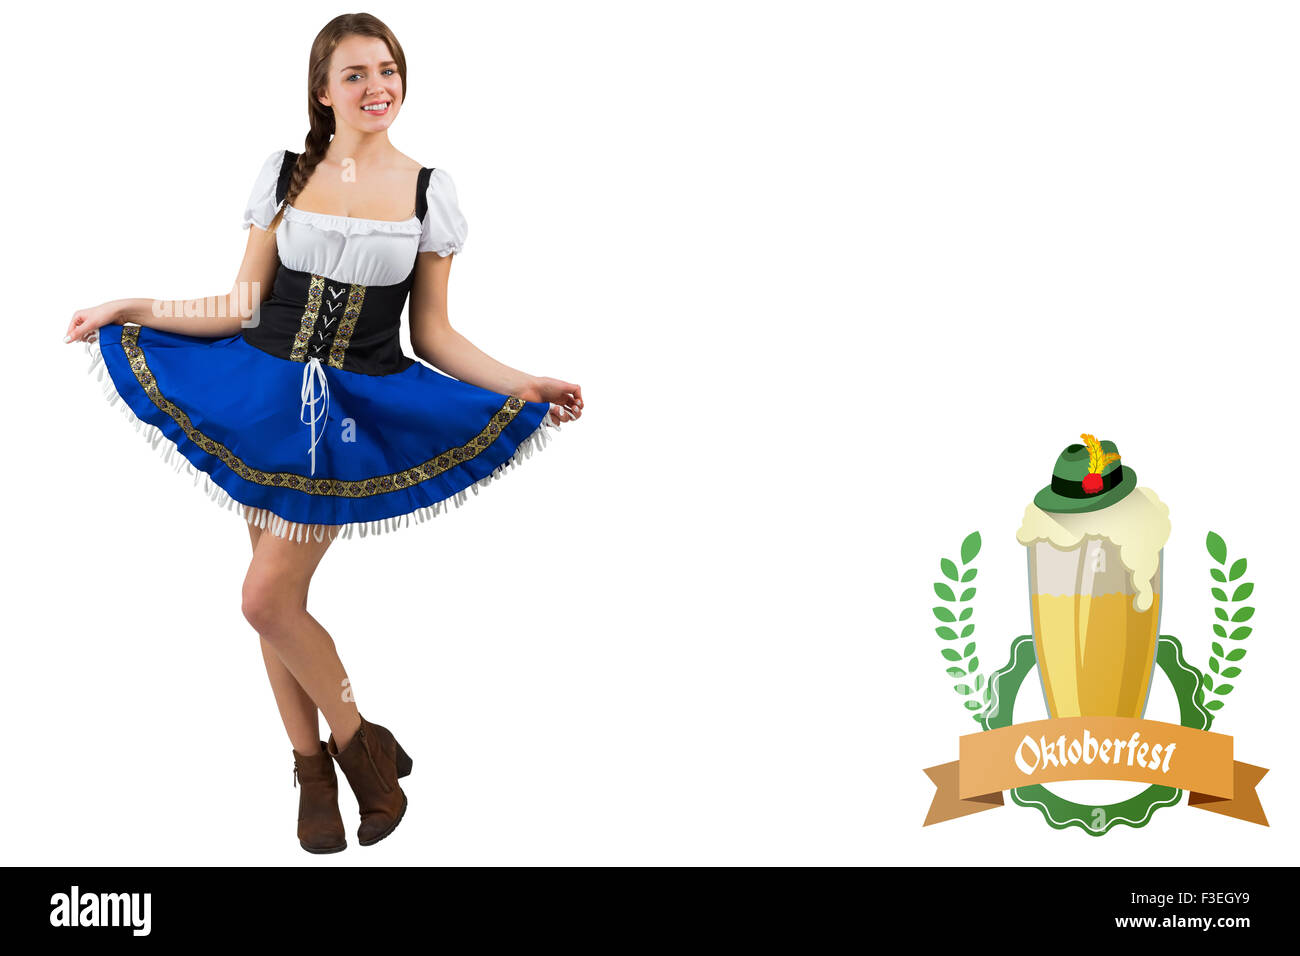 Imagen compuesta de Oktoberfest chica extendiendo su falda Foto de stock